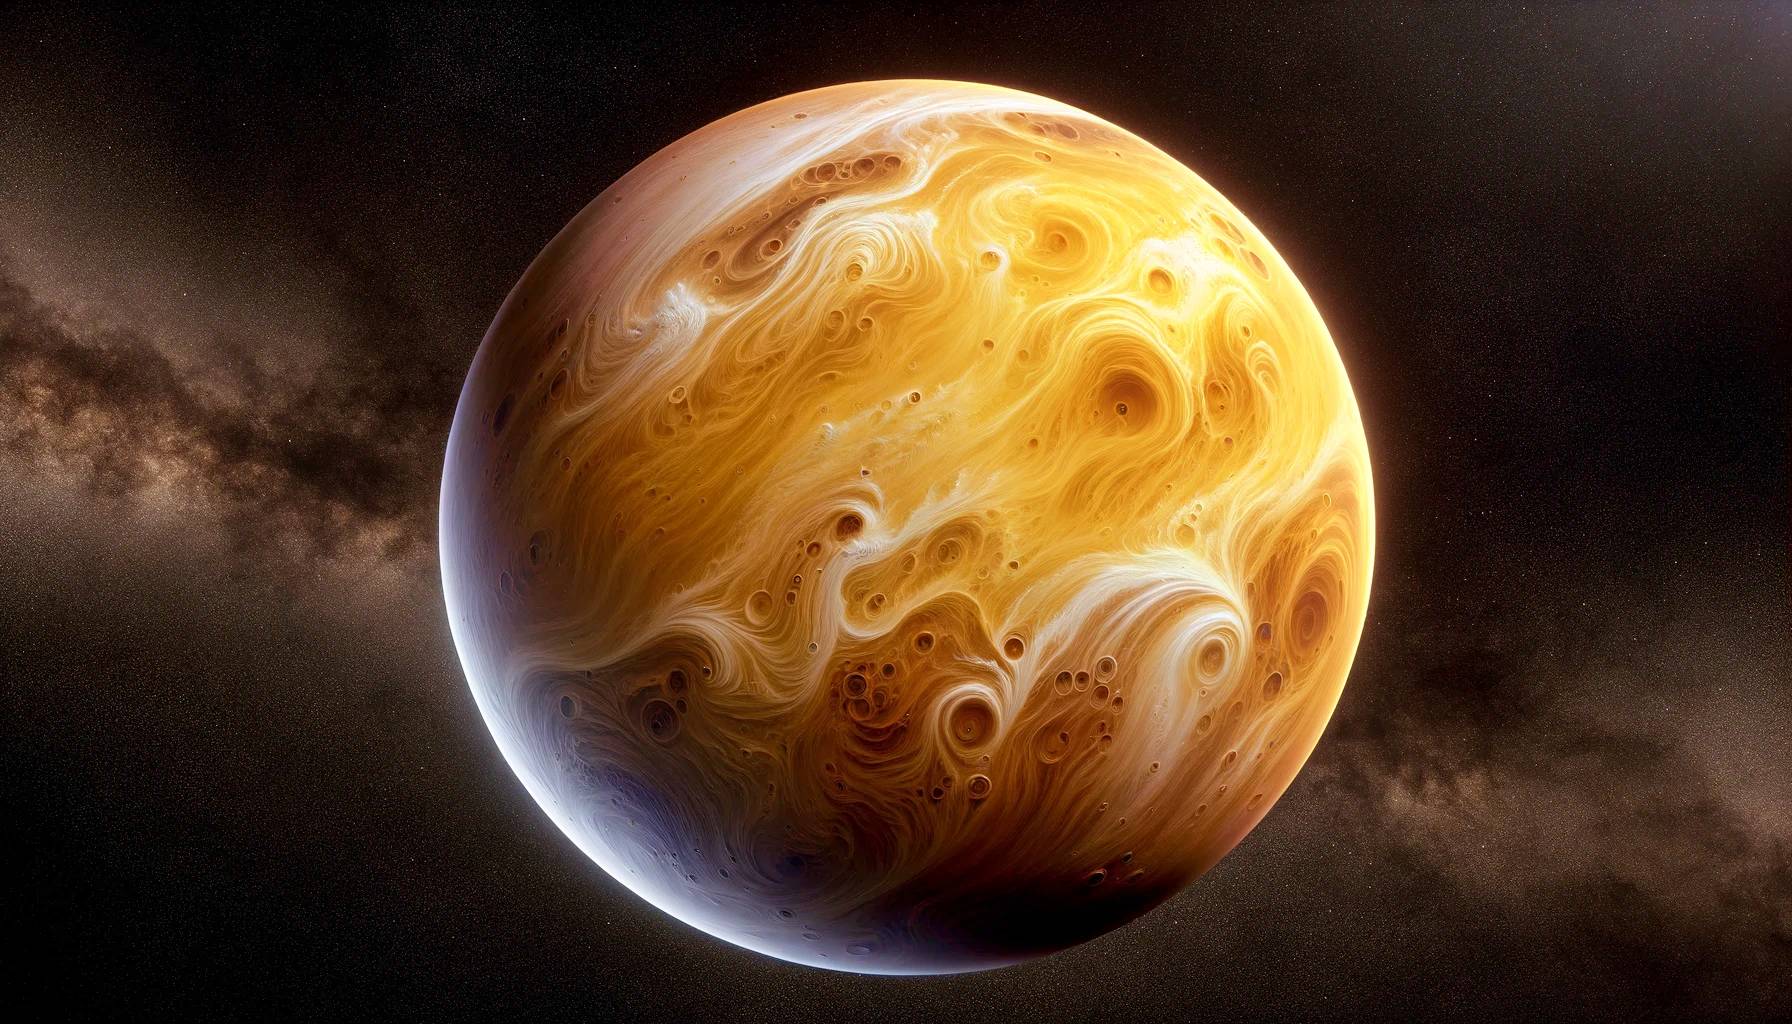 Planète Vénus IMPRESSIONNANTE Découverte de la première humanité